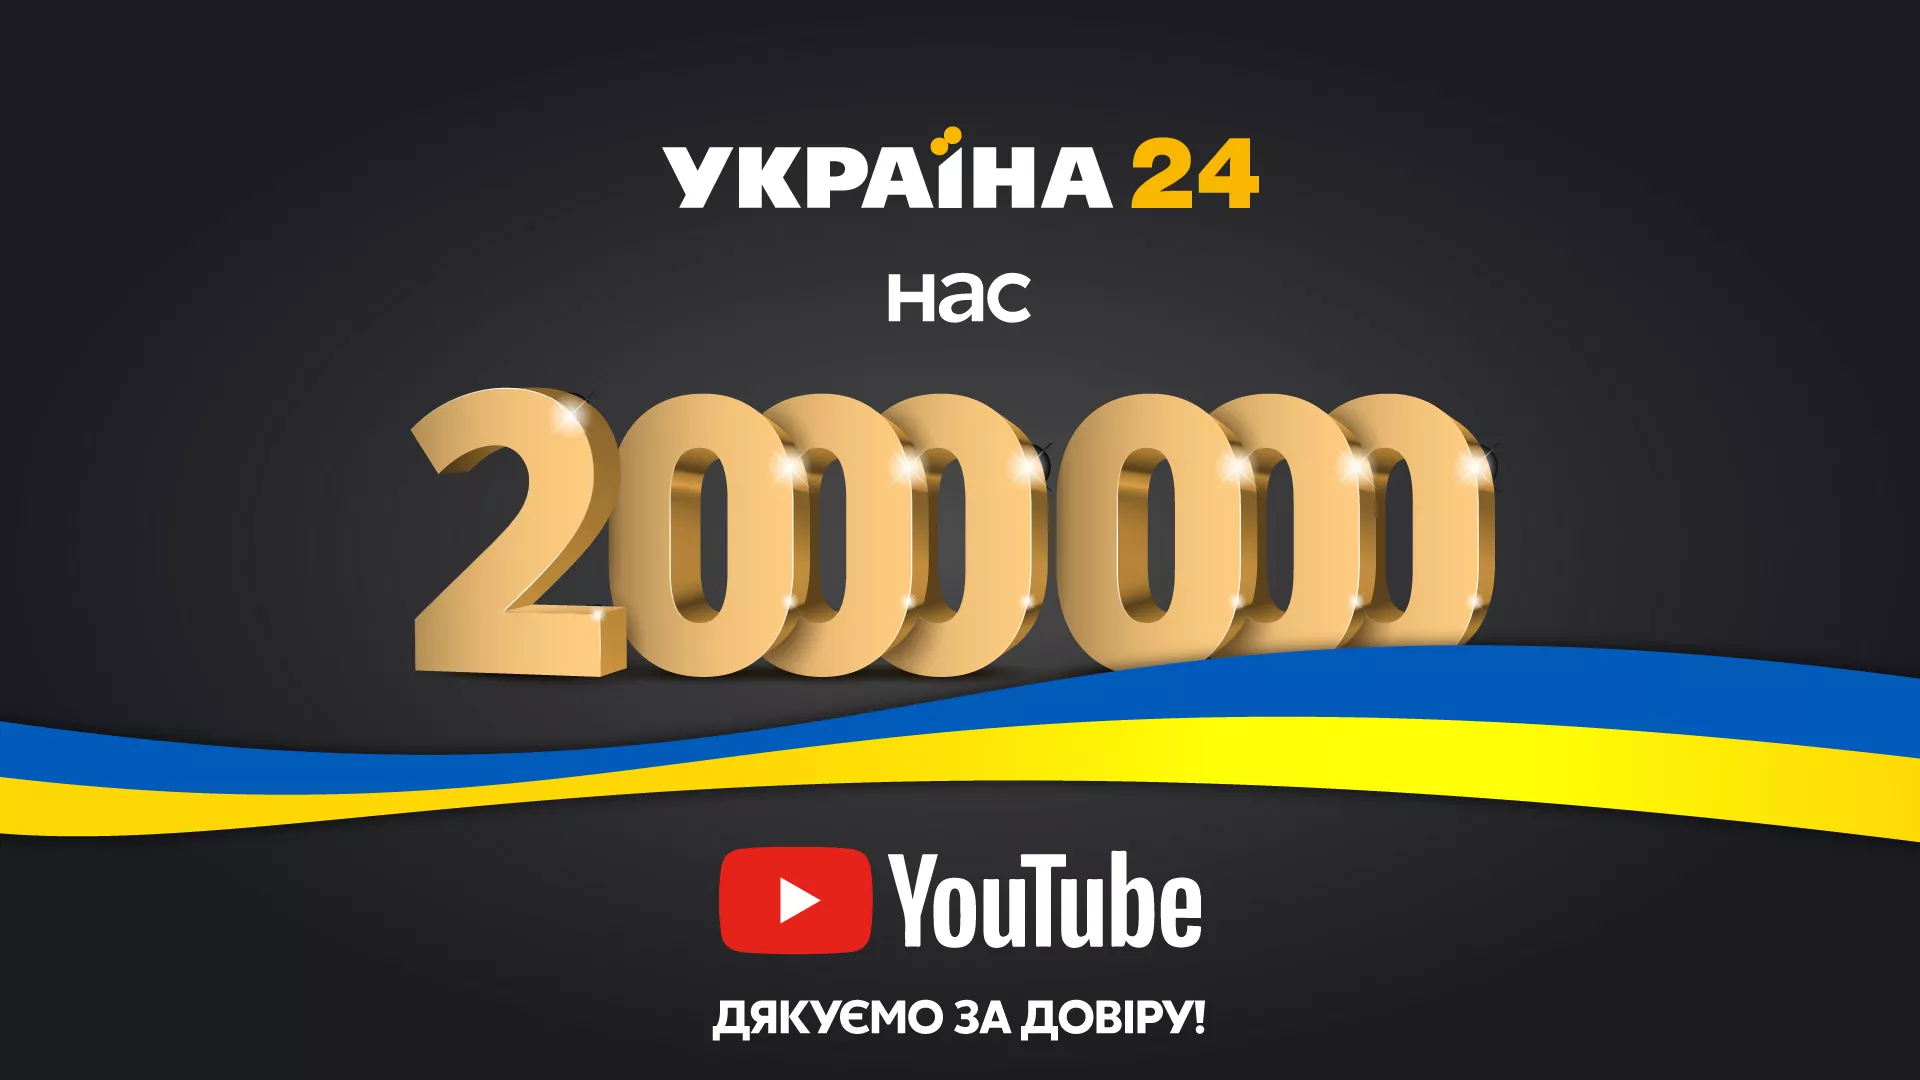 Украина 24 youtube